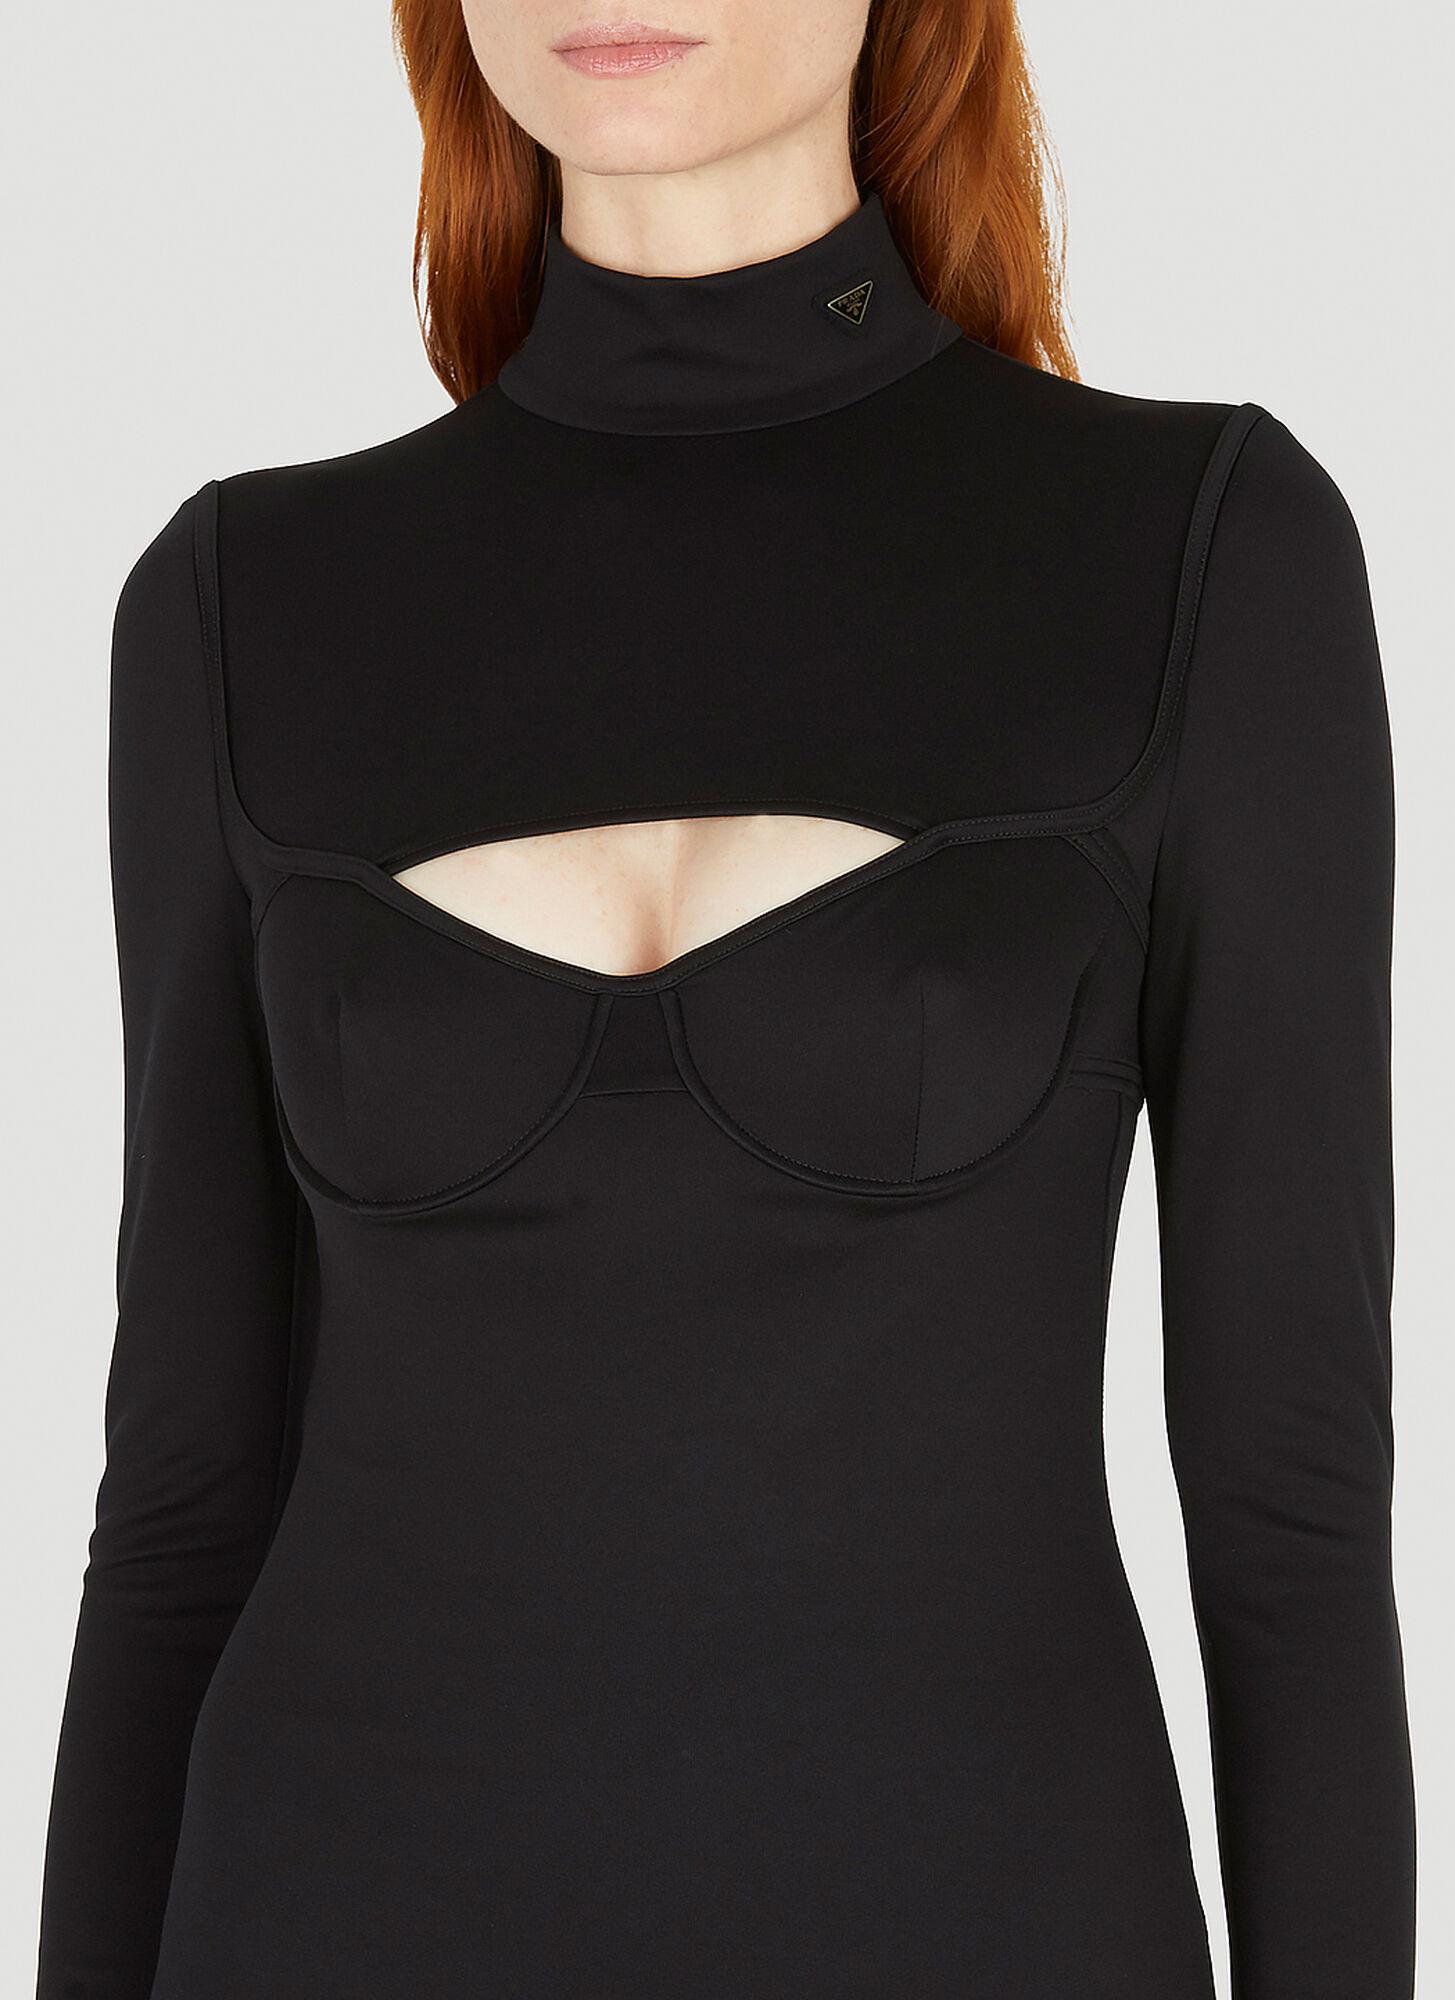 Prada Cut Out Dress in Black | Lyst